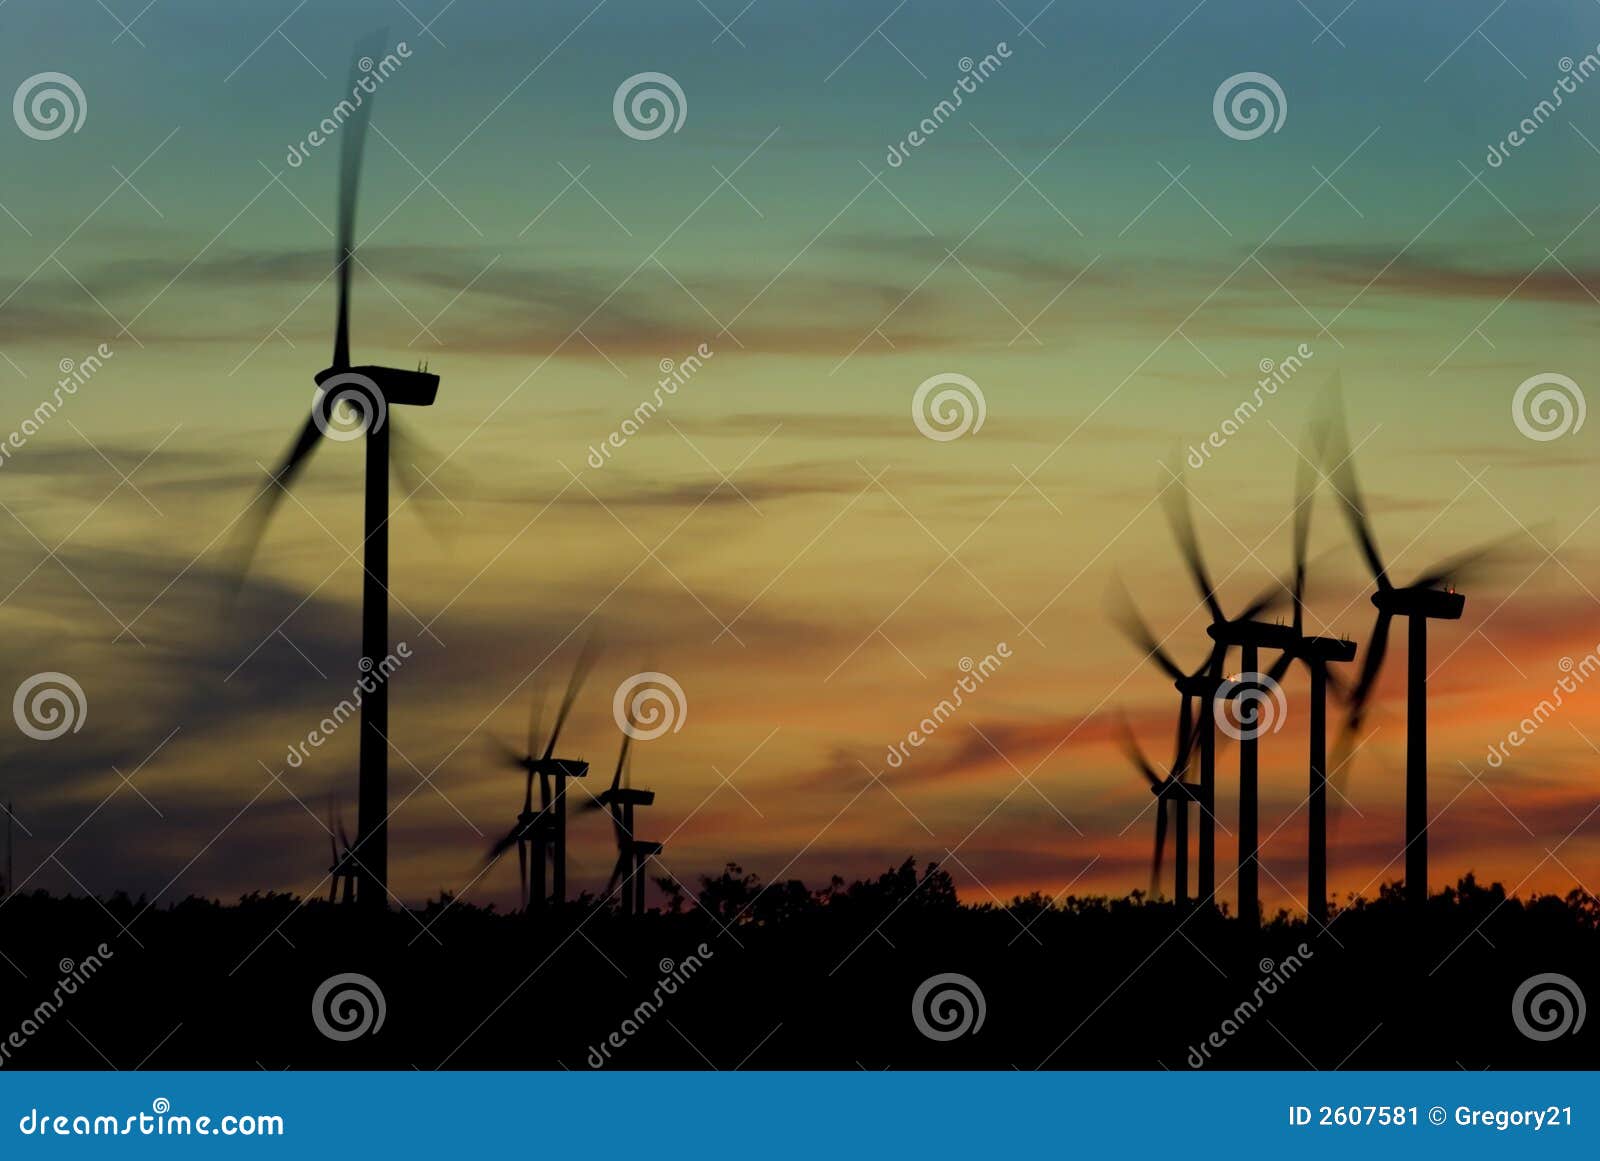 Het landbouwbedrijf van de wind met windmolens bij zonsondergang.